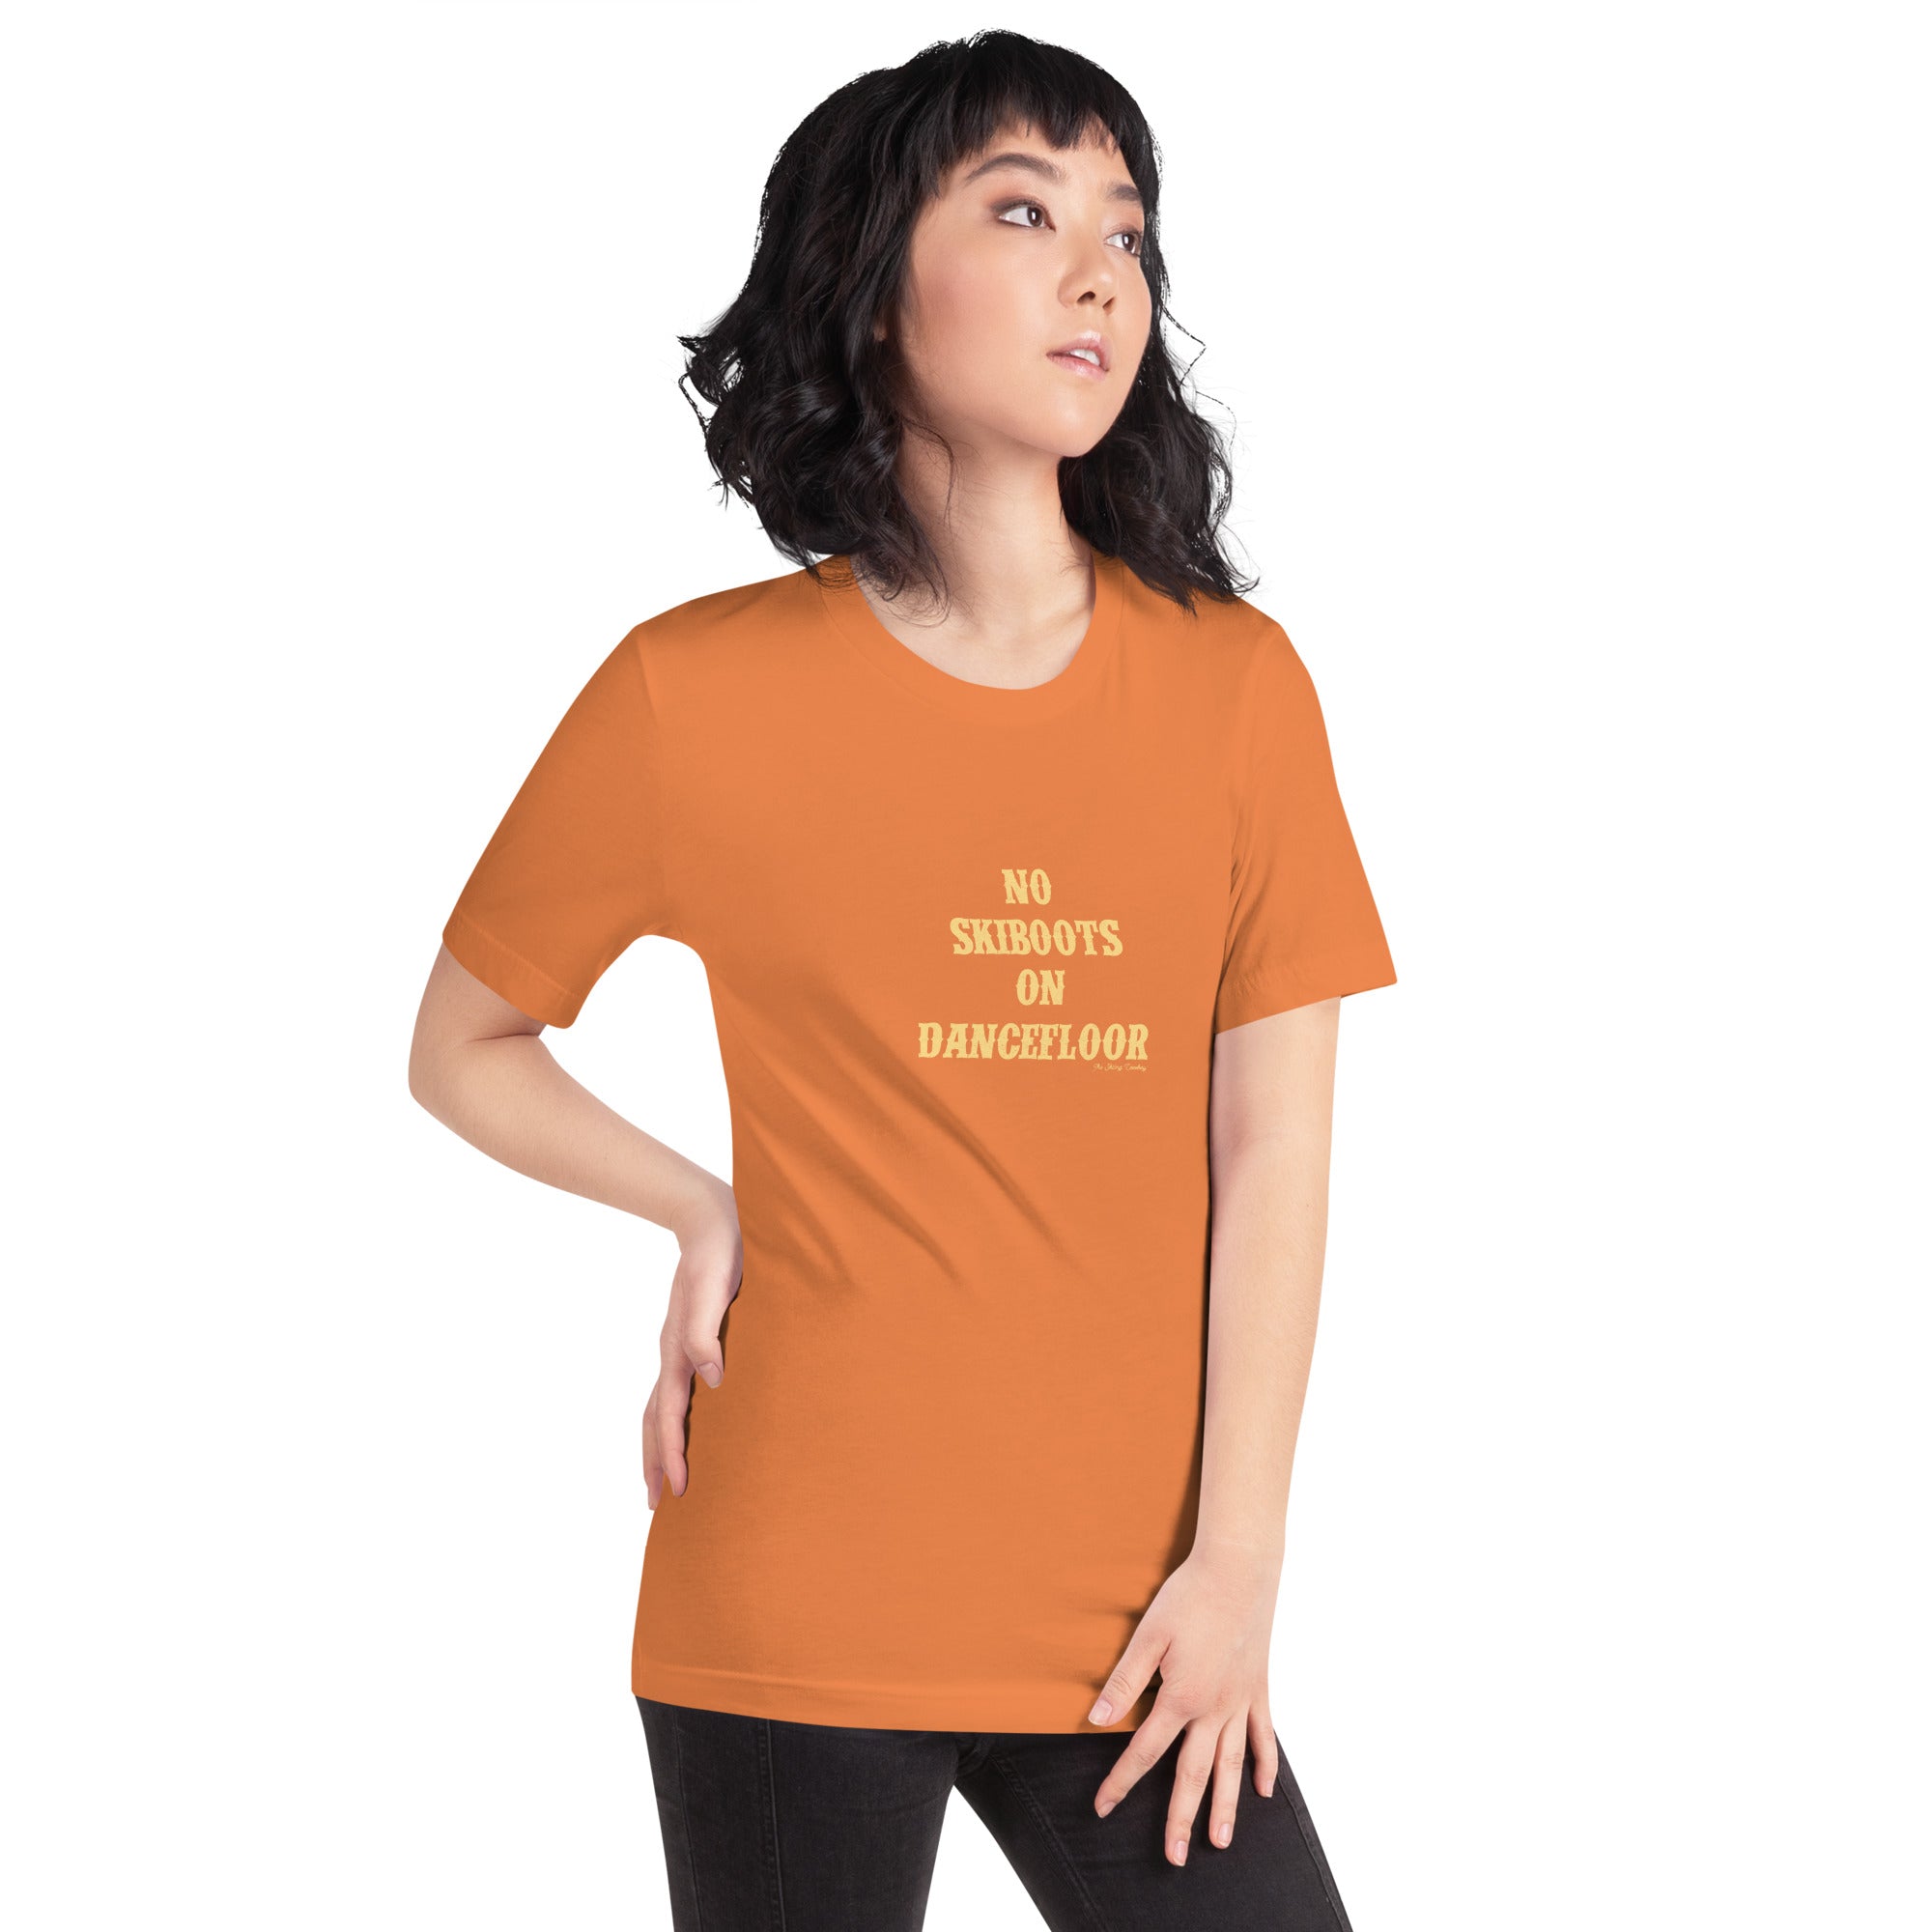 T-shirt en coton unisexe No Skiboots on Dancefloor sur couleurs vives